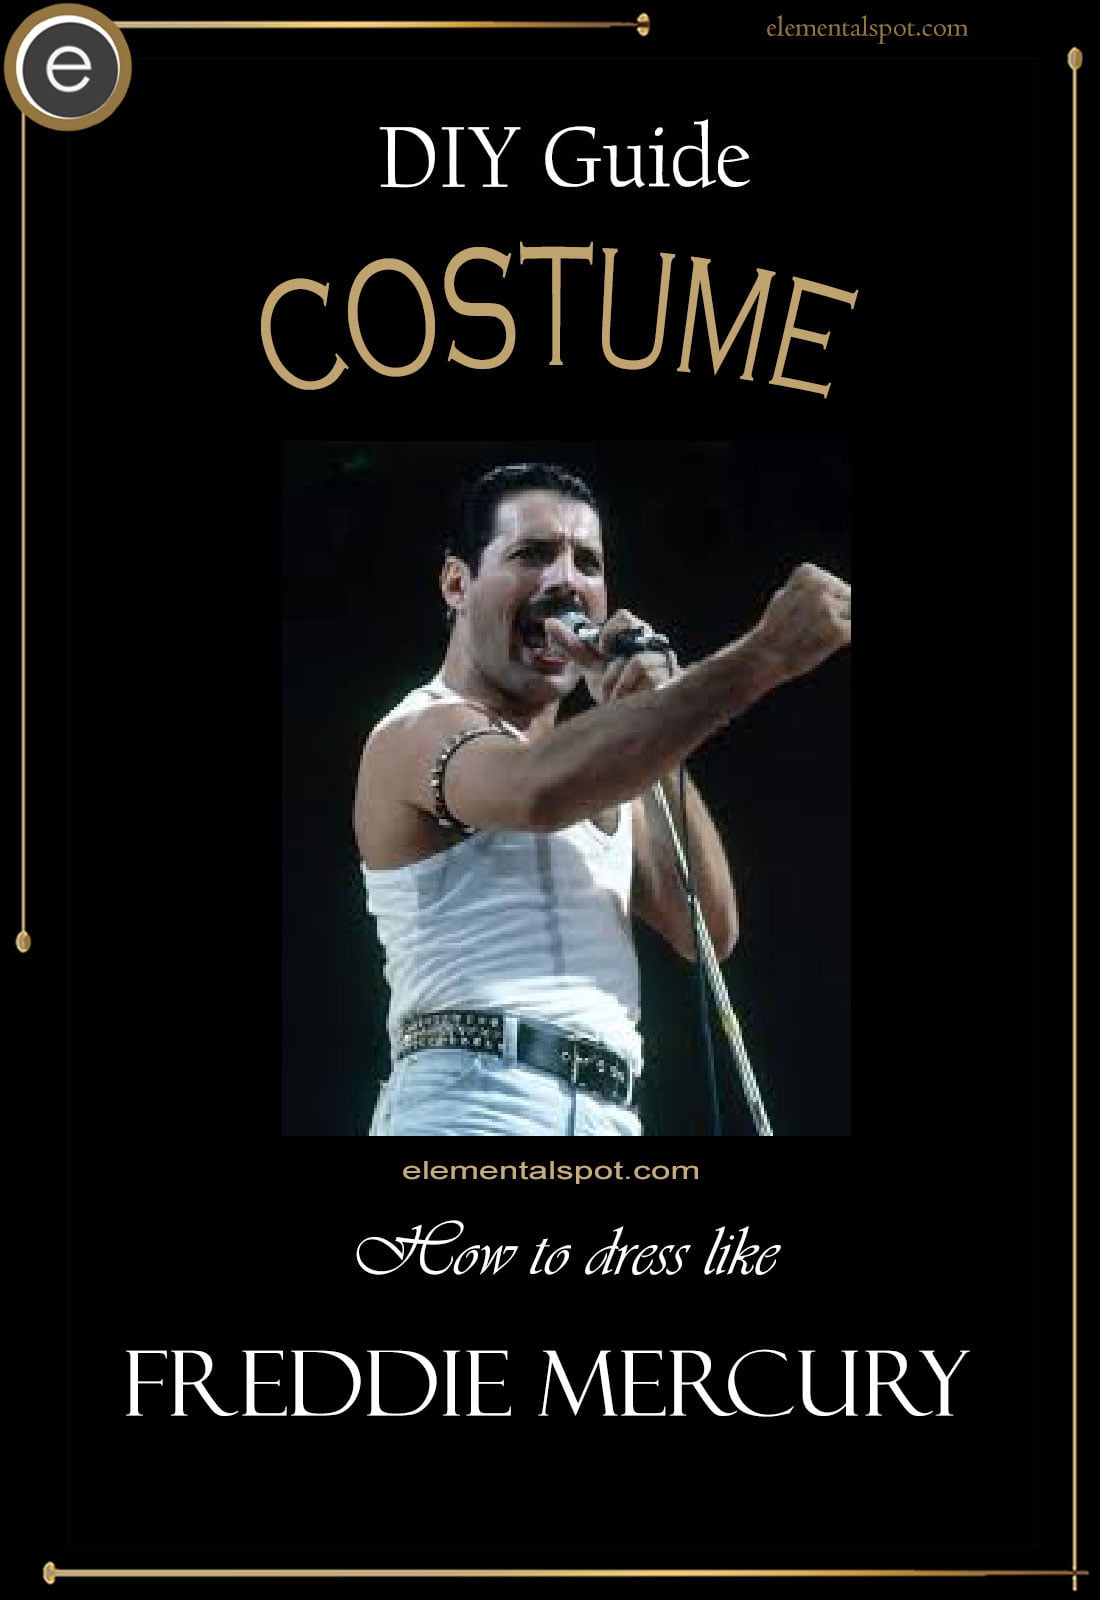 Dress Up Like Freddie Mercury - Elemental Spot